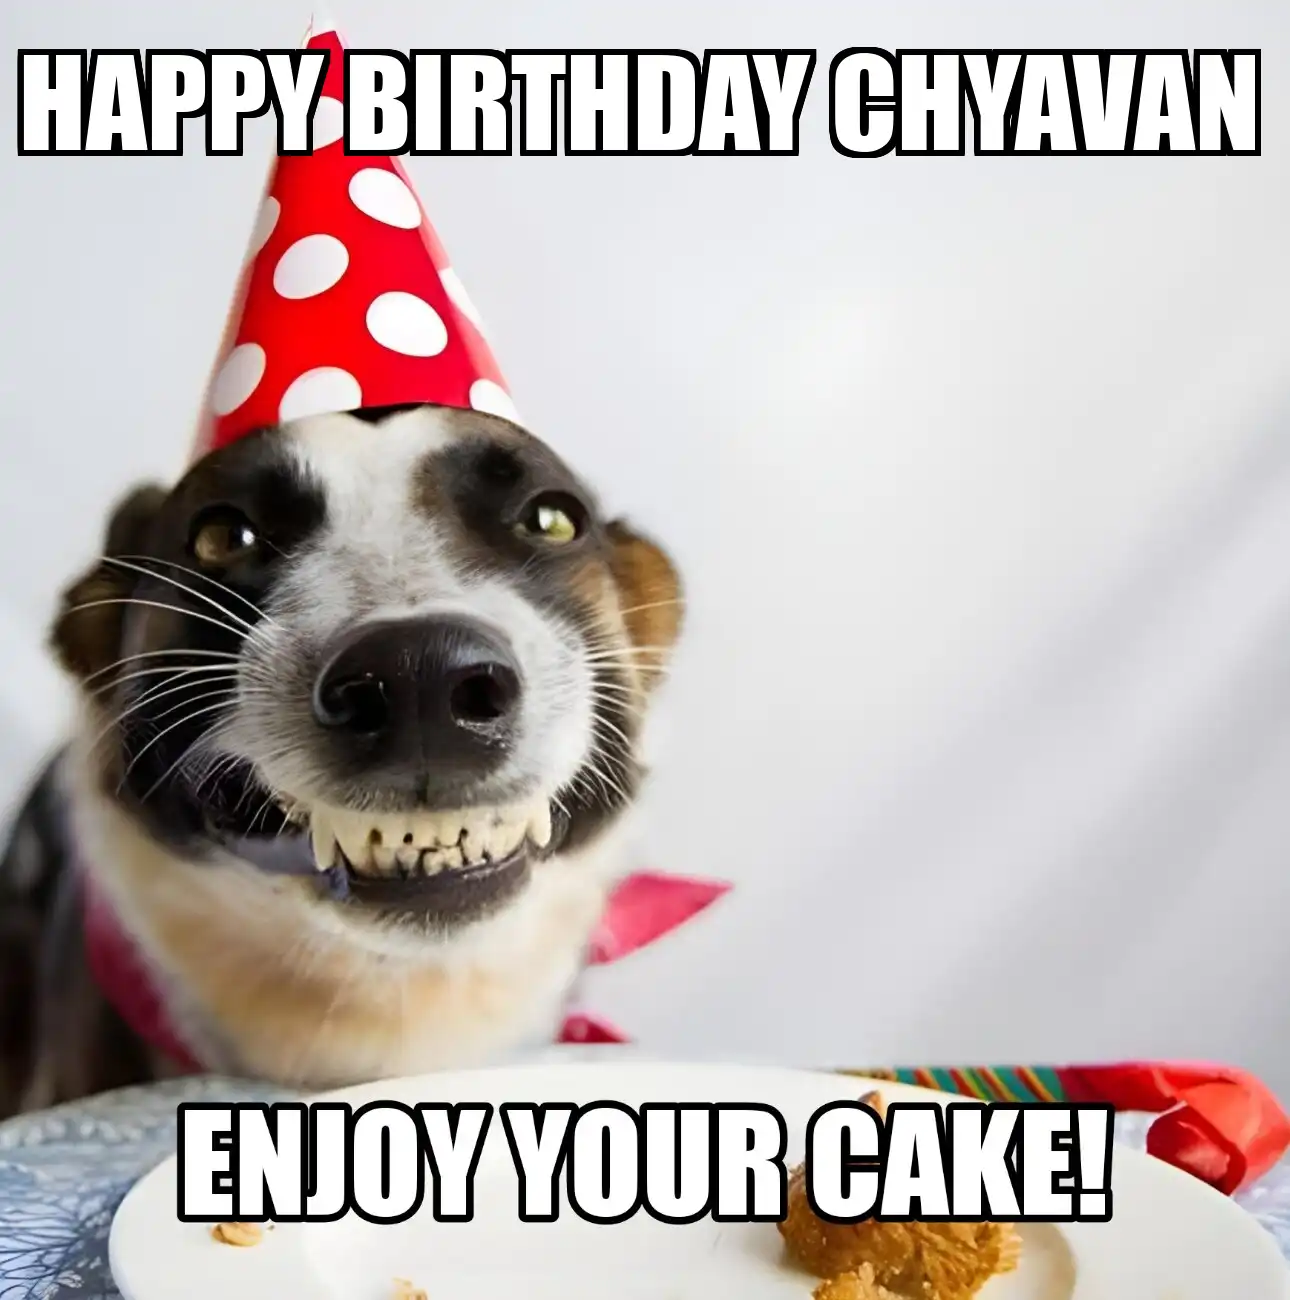 Happy Birthday Chyavan Enjoy Your Cake Dog Meme